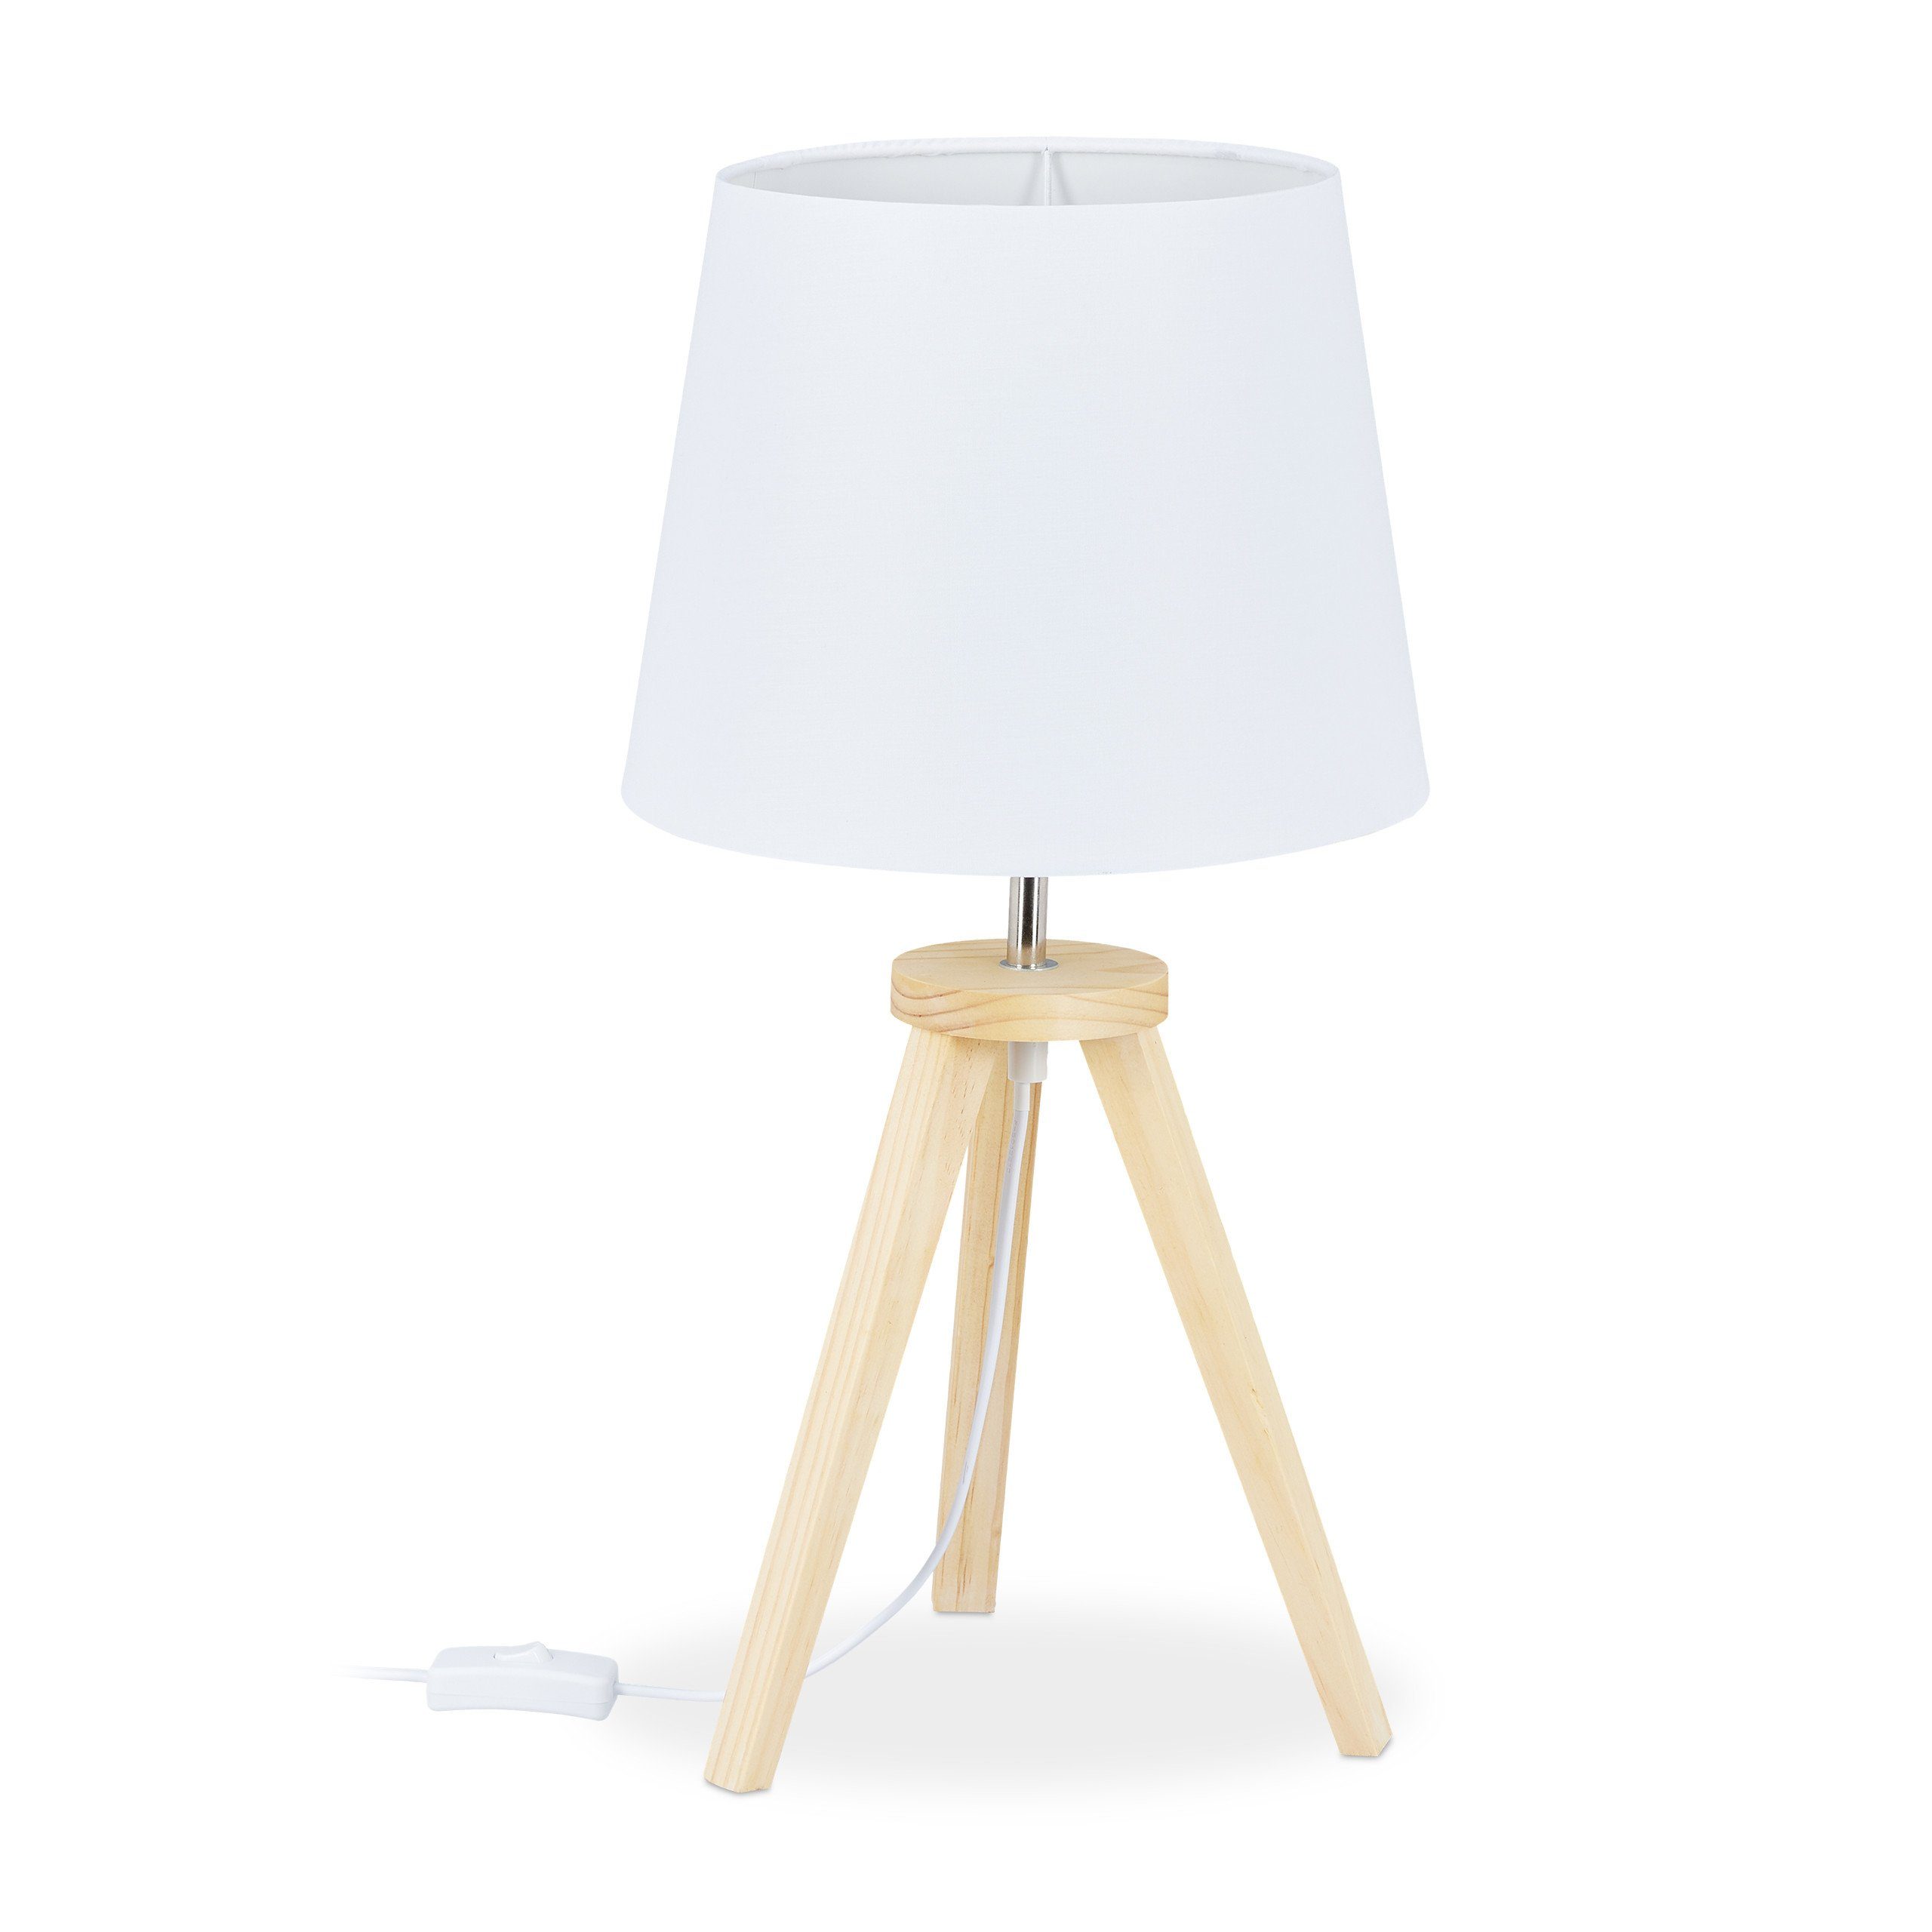 Tischleuchte Tischlampe 30cm Holz Braun Weiß Nachttisch-Lampe Schreibtischlampe 